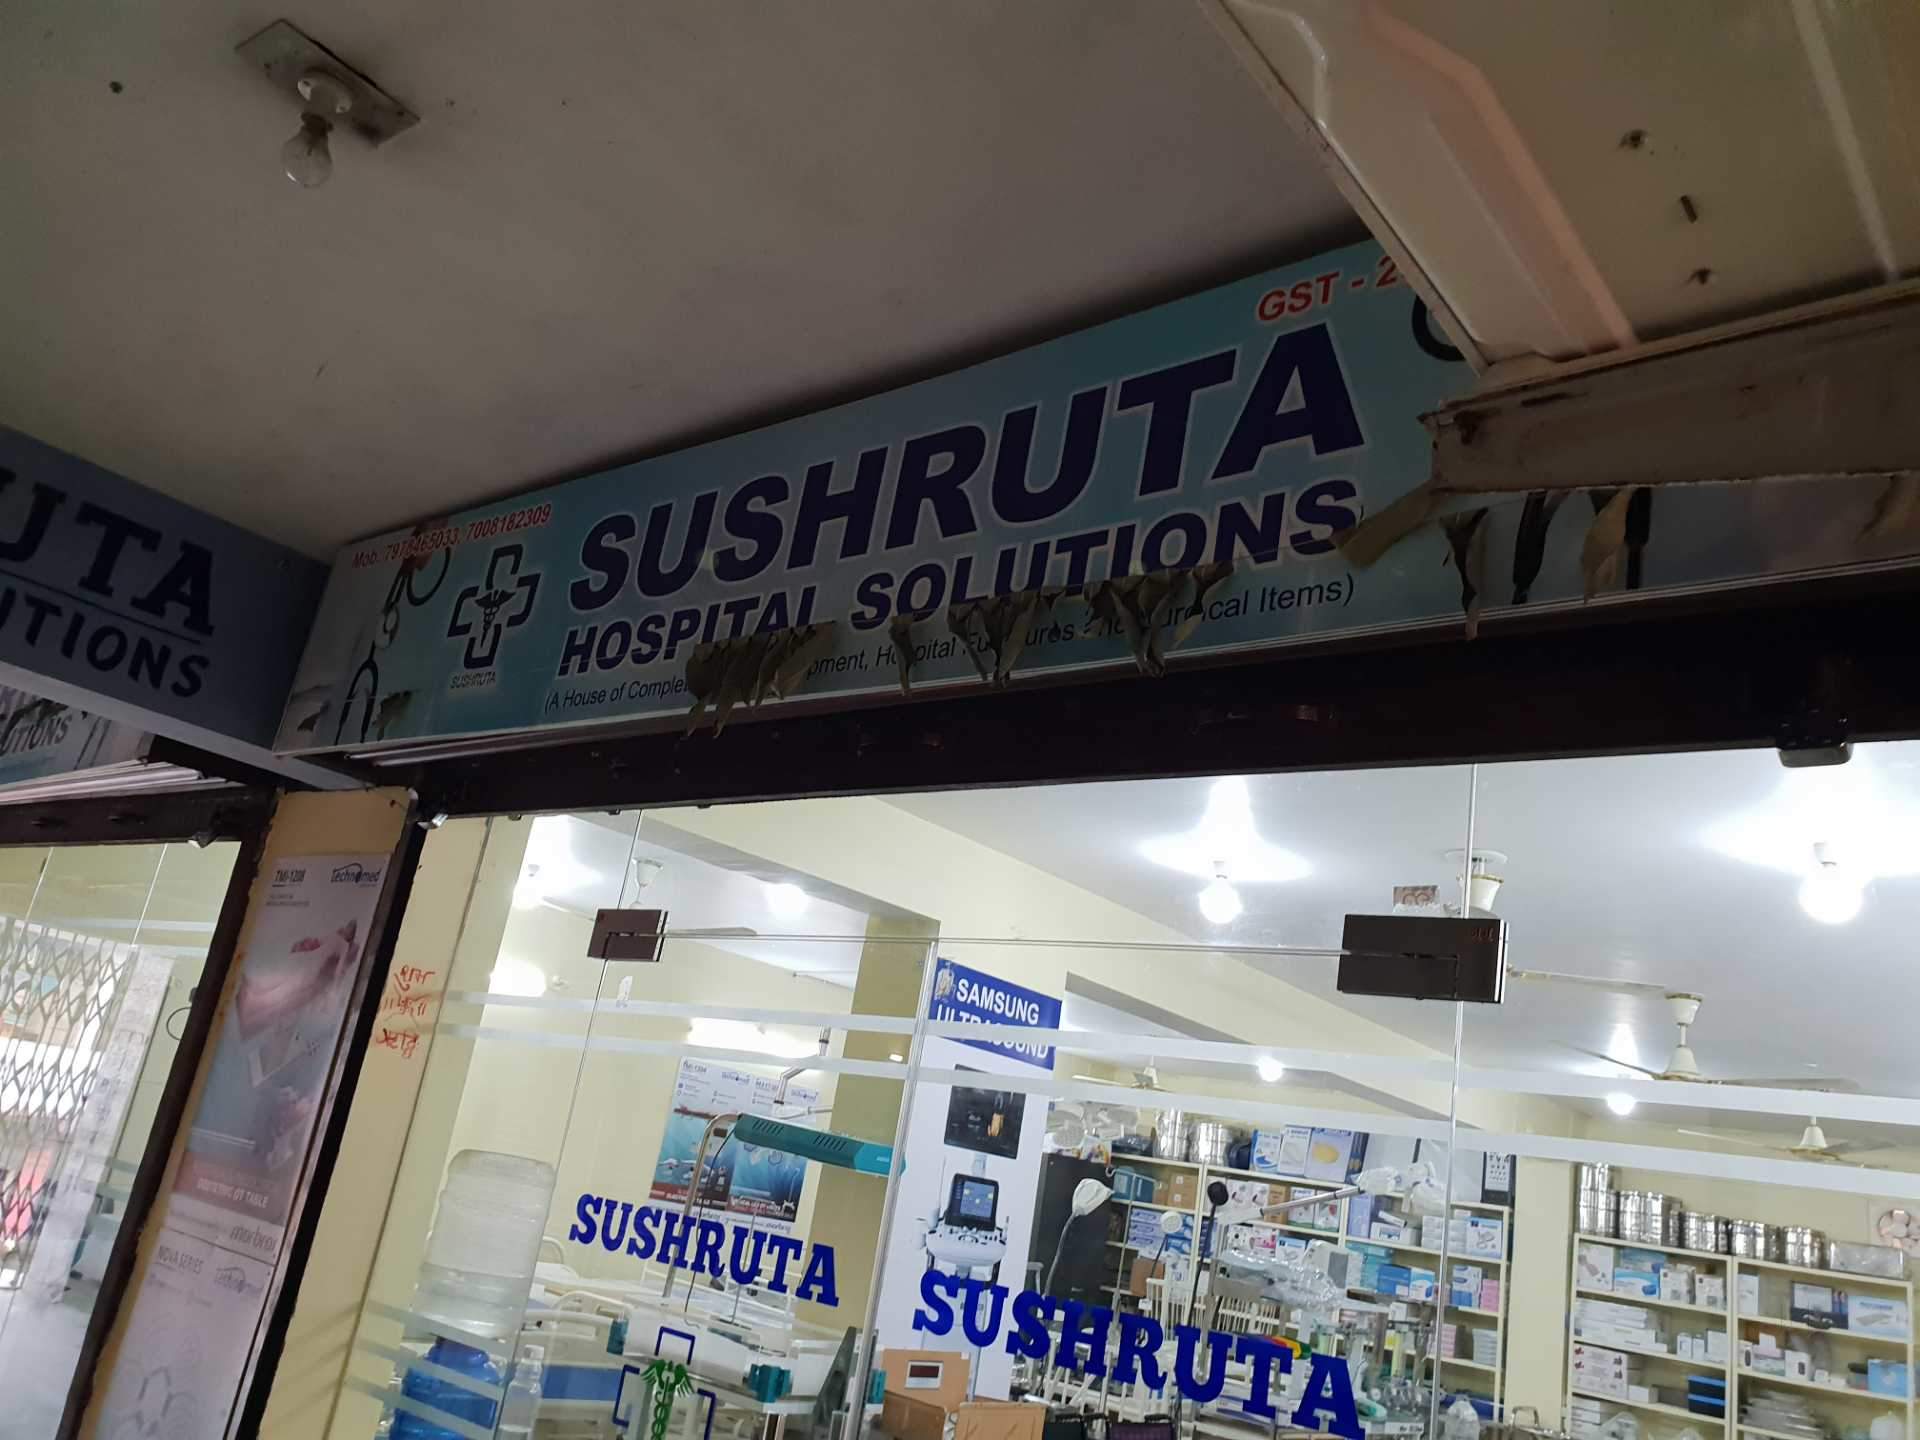 Sushruta Hospital Solution Photos Bariatu Ranchi Pictures